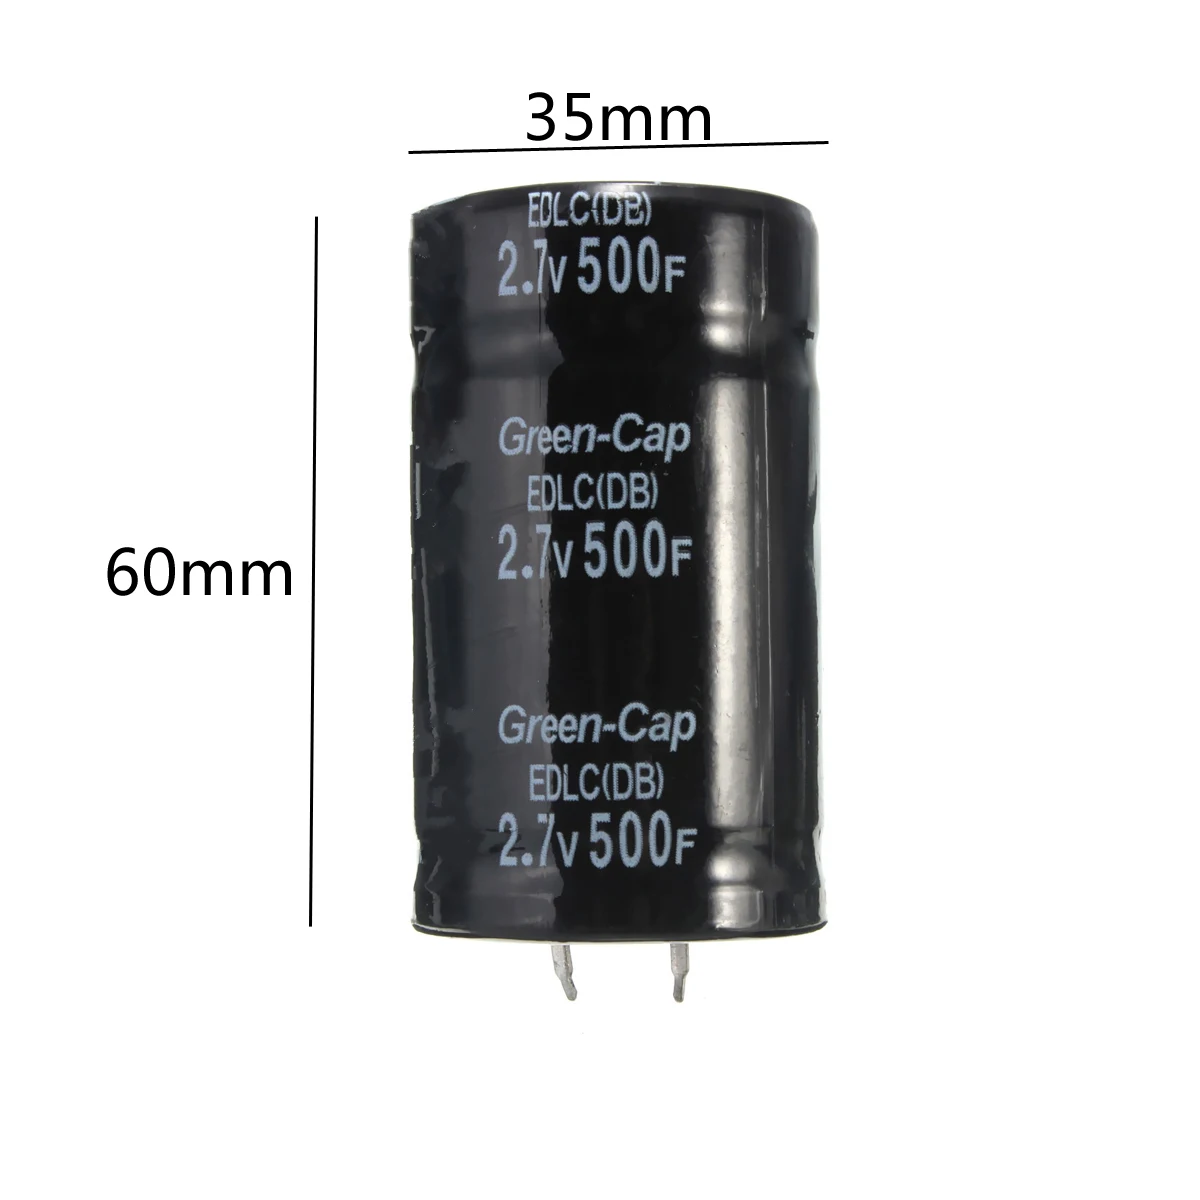 TMOEC 1 шт. фарад конденсатор 2,7 в 500F 35*60 мм супер конденсаторы через отверстие общего назначения дропшиппинг